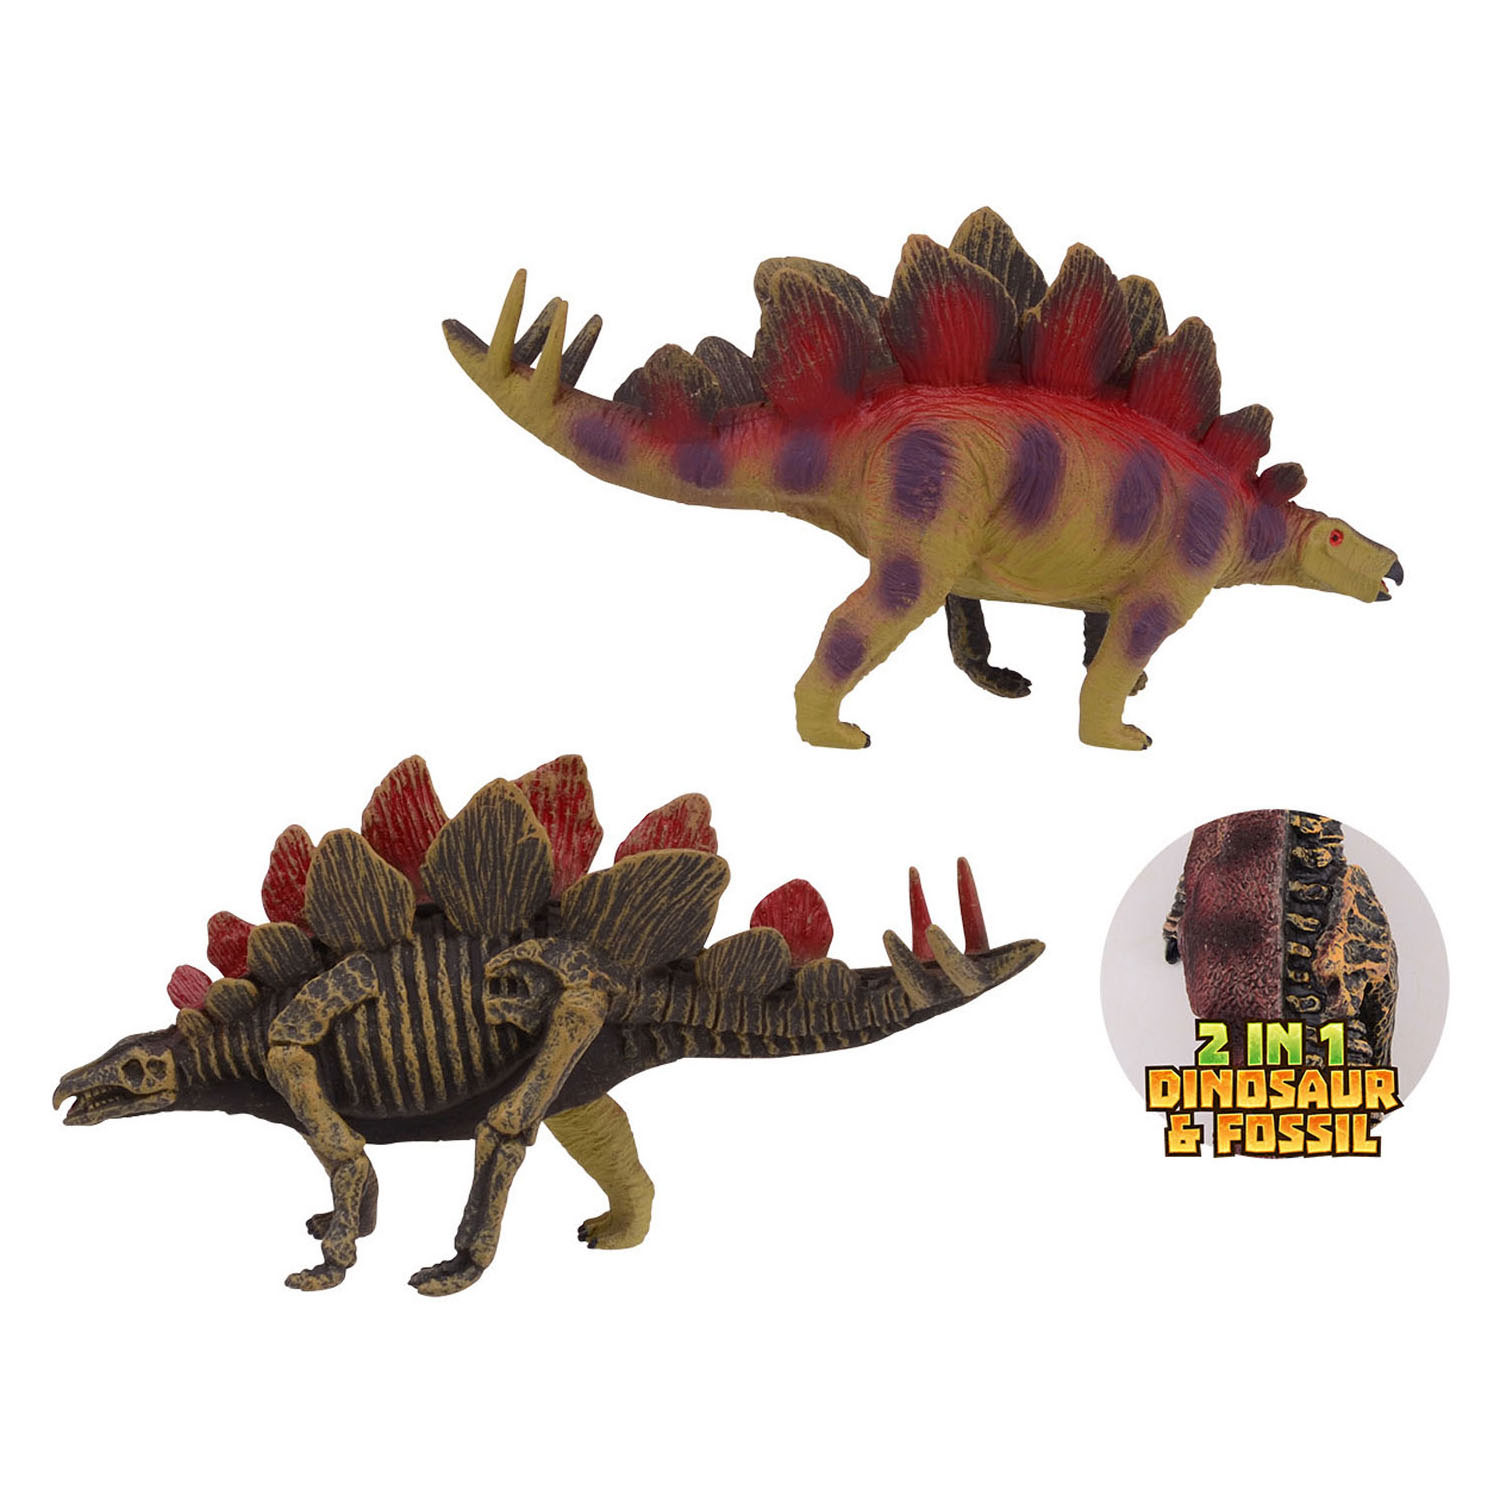 Tierwelt Zweiseitiger Dino - Stegosaurus